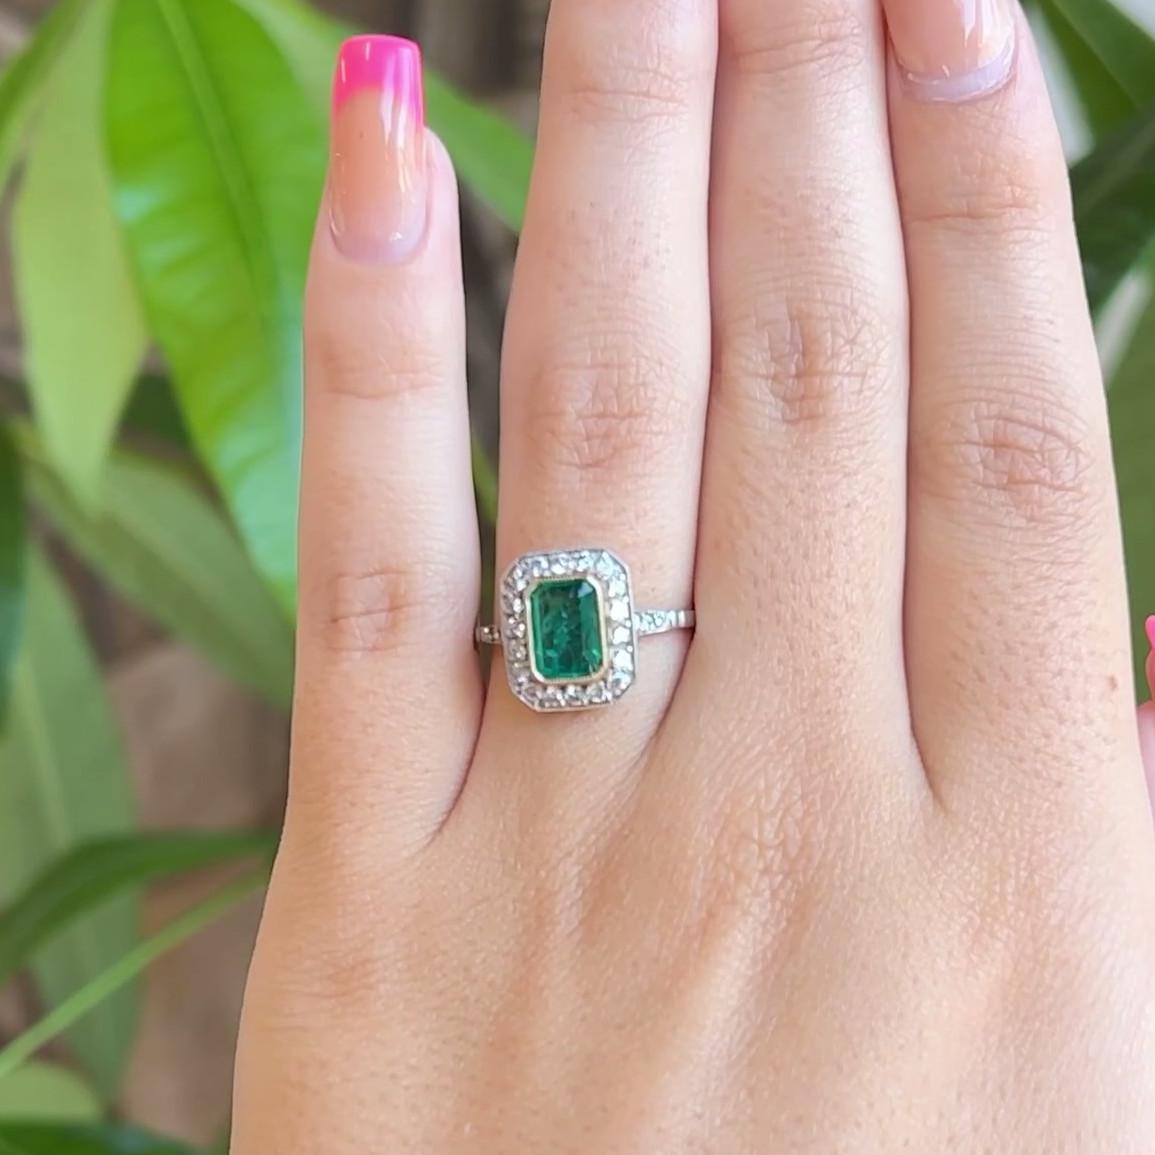 Ein Art Deco inspirierter Smaragd-Diamant-Platin-Ring. Mit einem rechteckigen Smaragd im Stufenschliff von 0,77 Karat. Akzentuiert durch 24 runde Diamanten im Brillantschliff mit einem Gesamtgewicht von etwa 0,40 Karat, eingestuft als nahezu